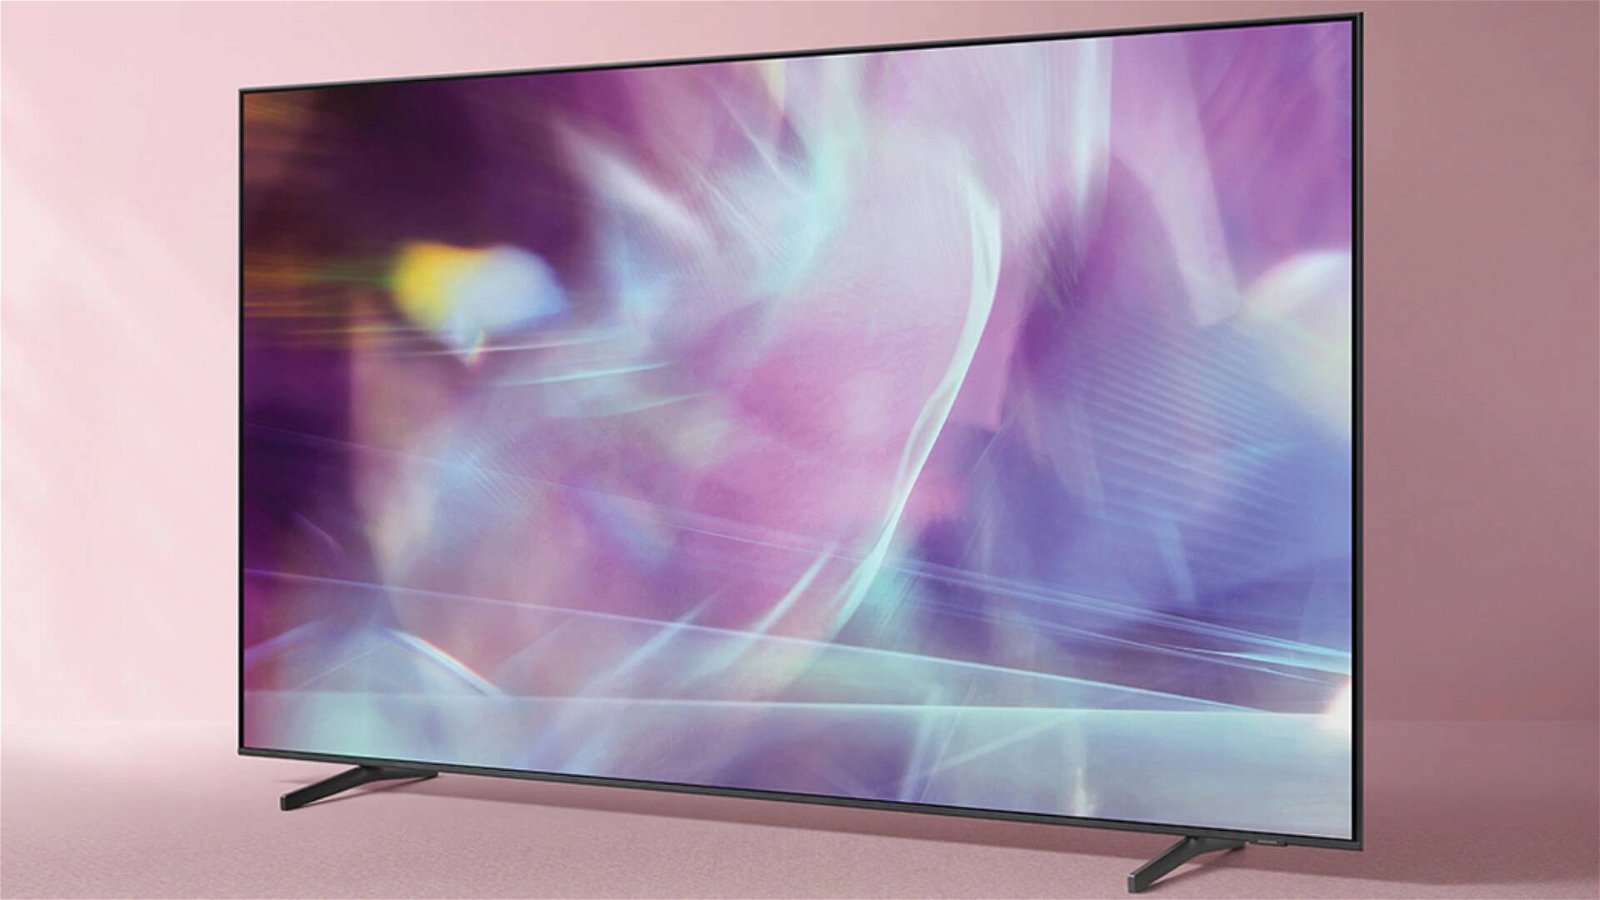 Immagine di Sconto bomba per questa smart TV 4K Samsung QLED da 65": risparmi oltre 400€!